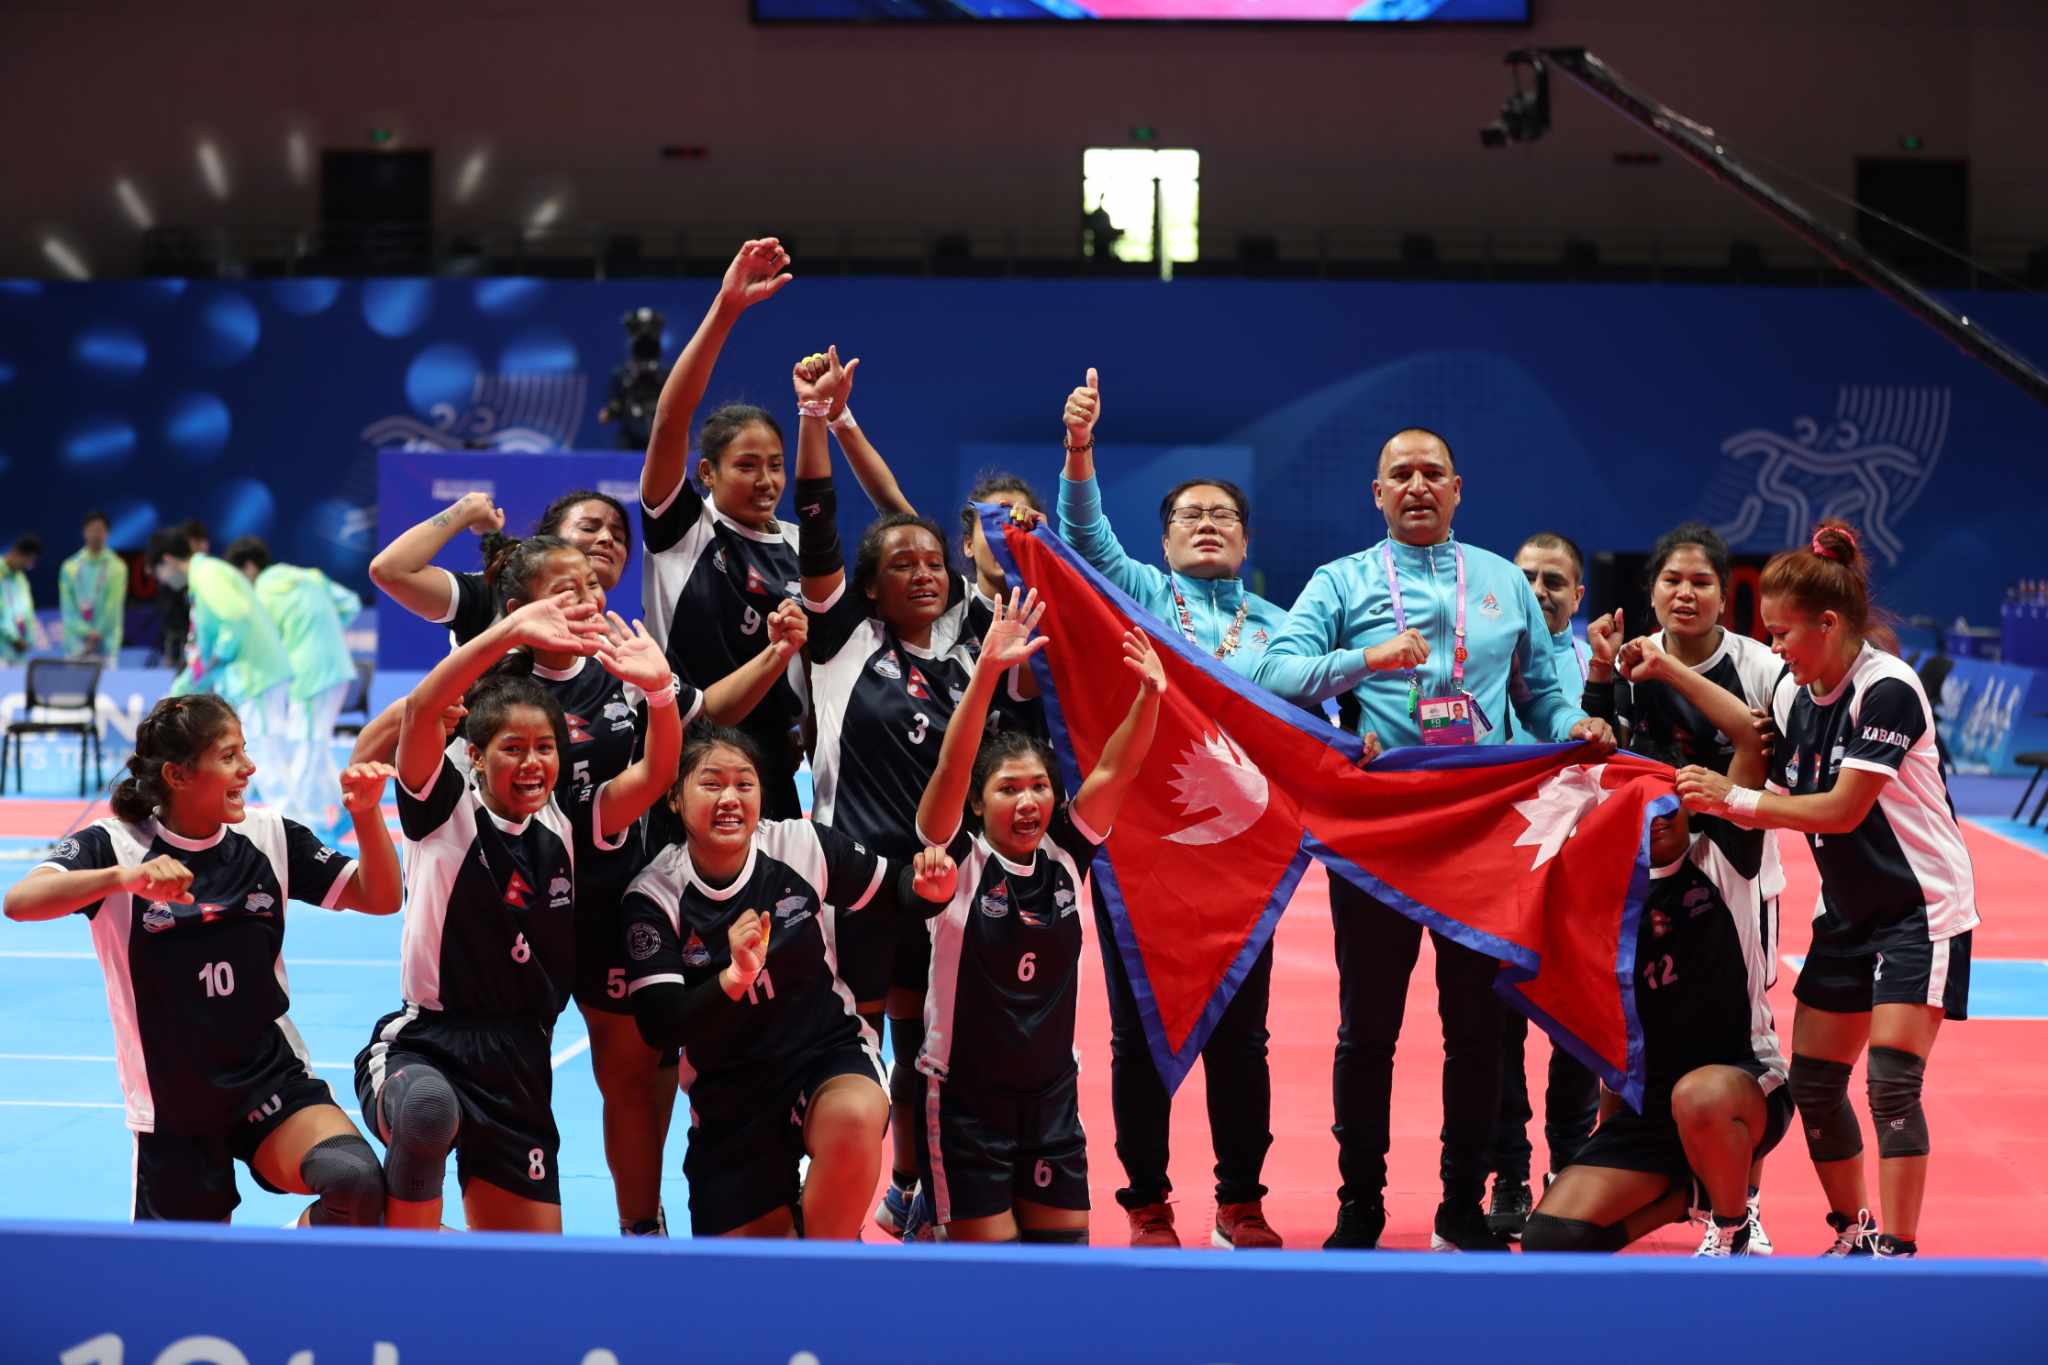 हाङचौ एसियाली खेलकुदमा नेपाललाई कबड्डीमा पदक निश्चित